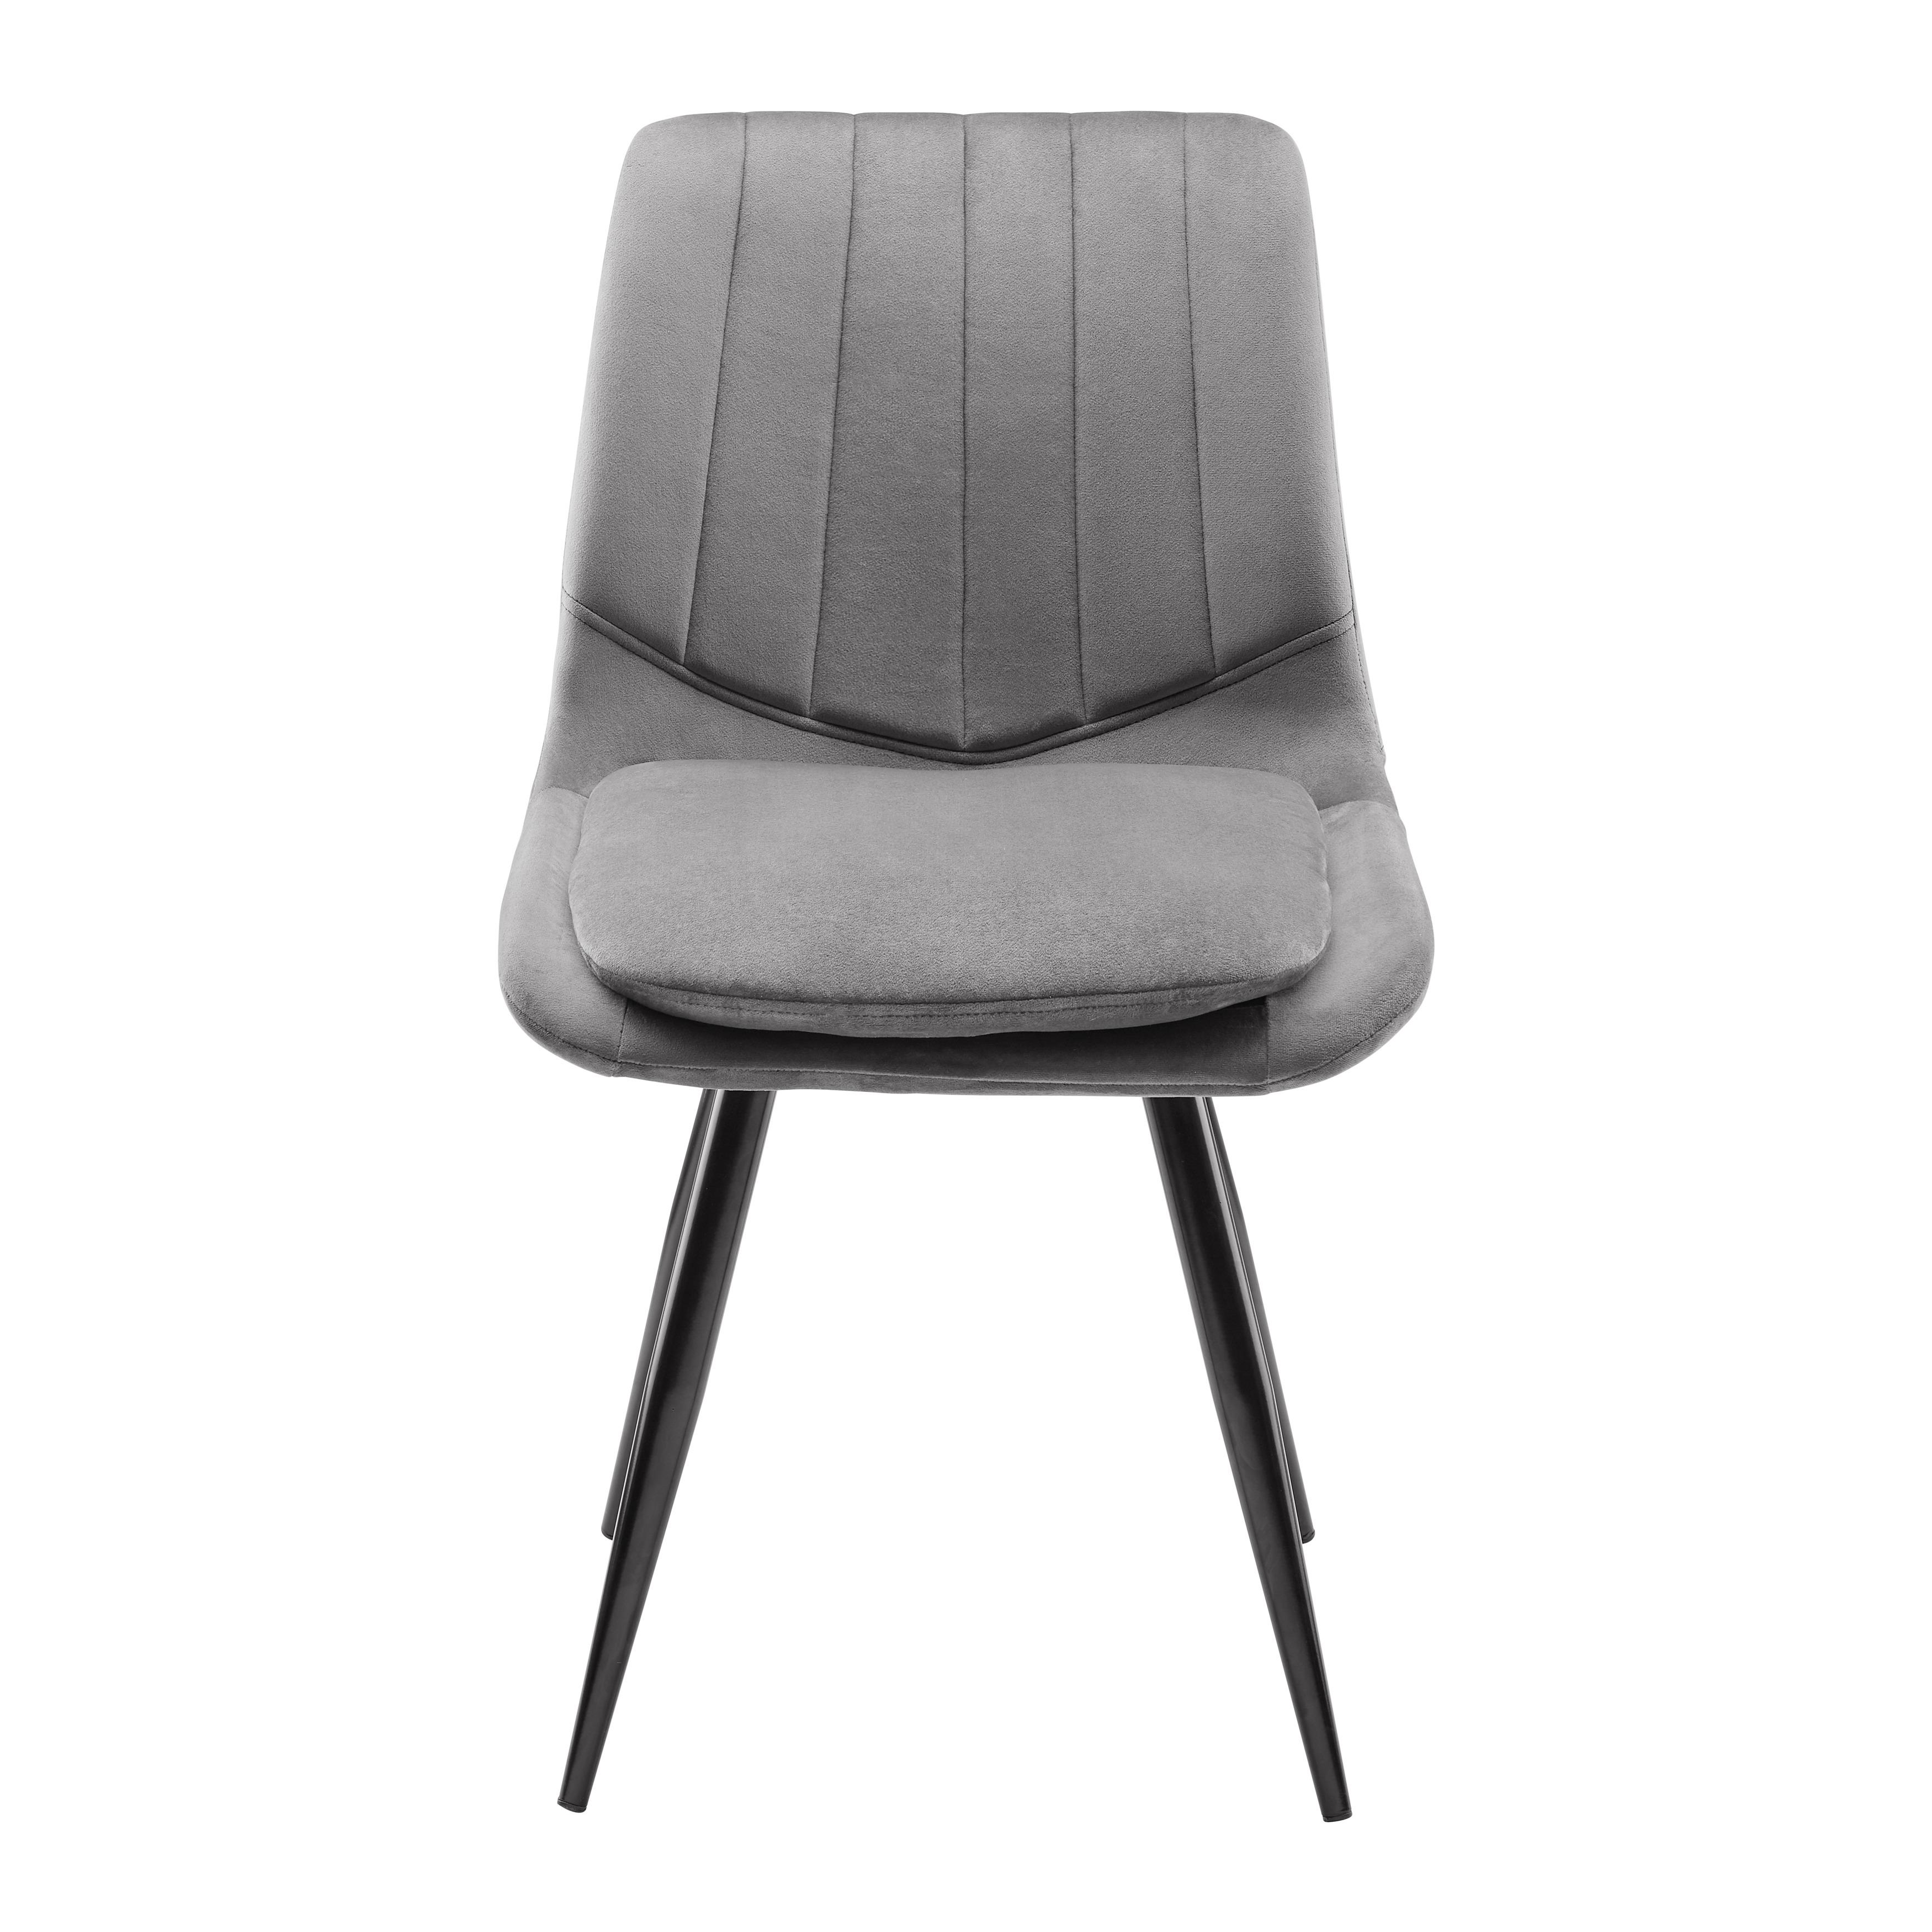 Jídelní Židle Joy Tm. Šědá - černá/tmavě šedá, Moderní, kov/textil (49/82/55cm) - Modern Living